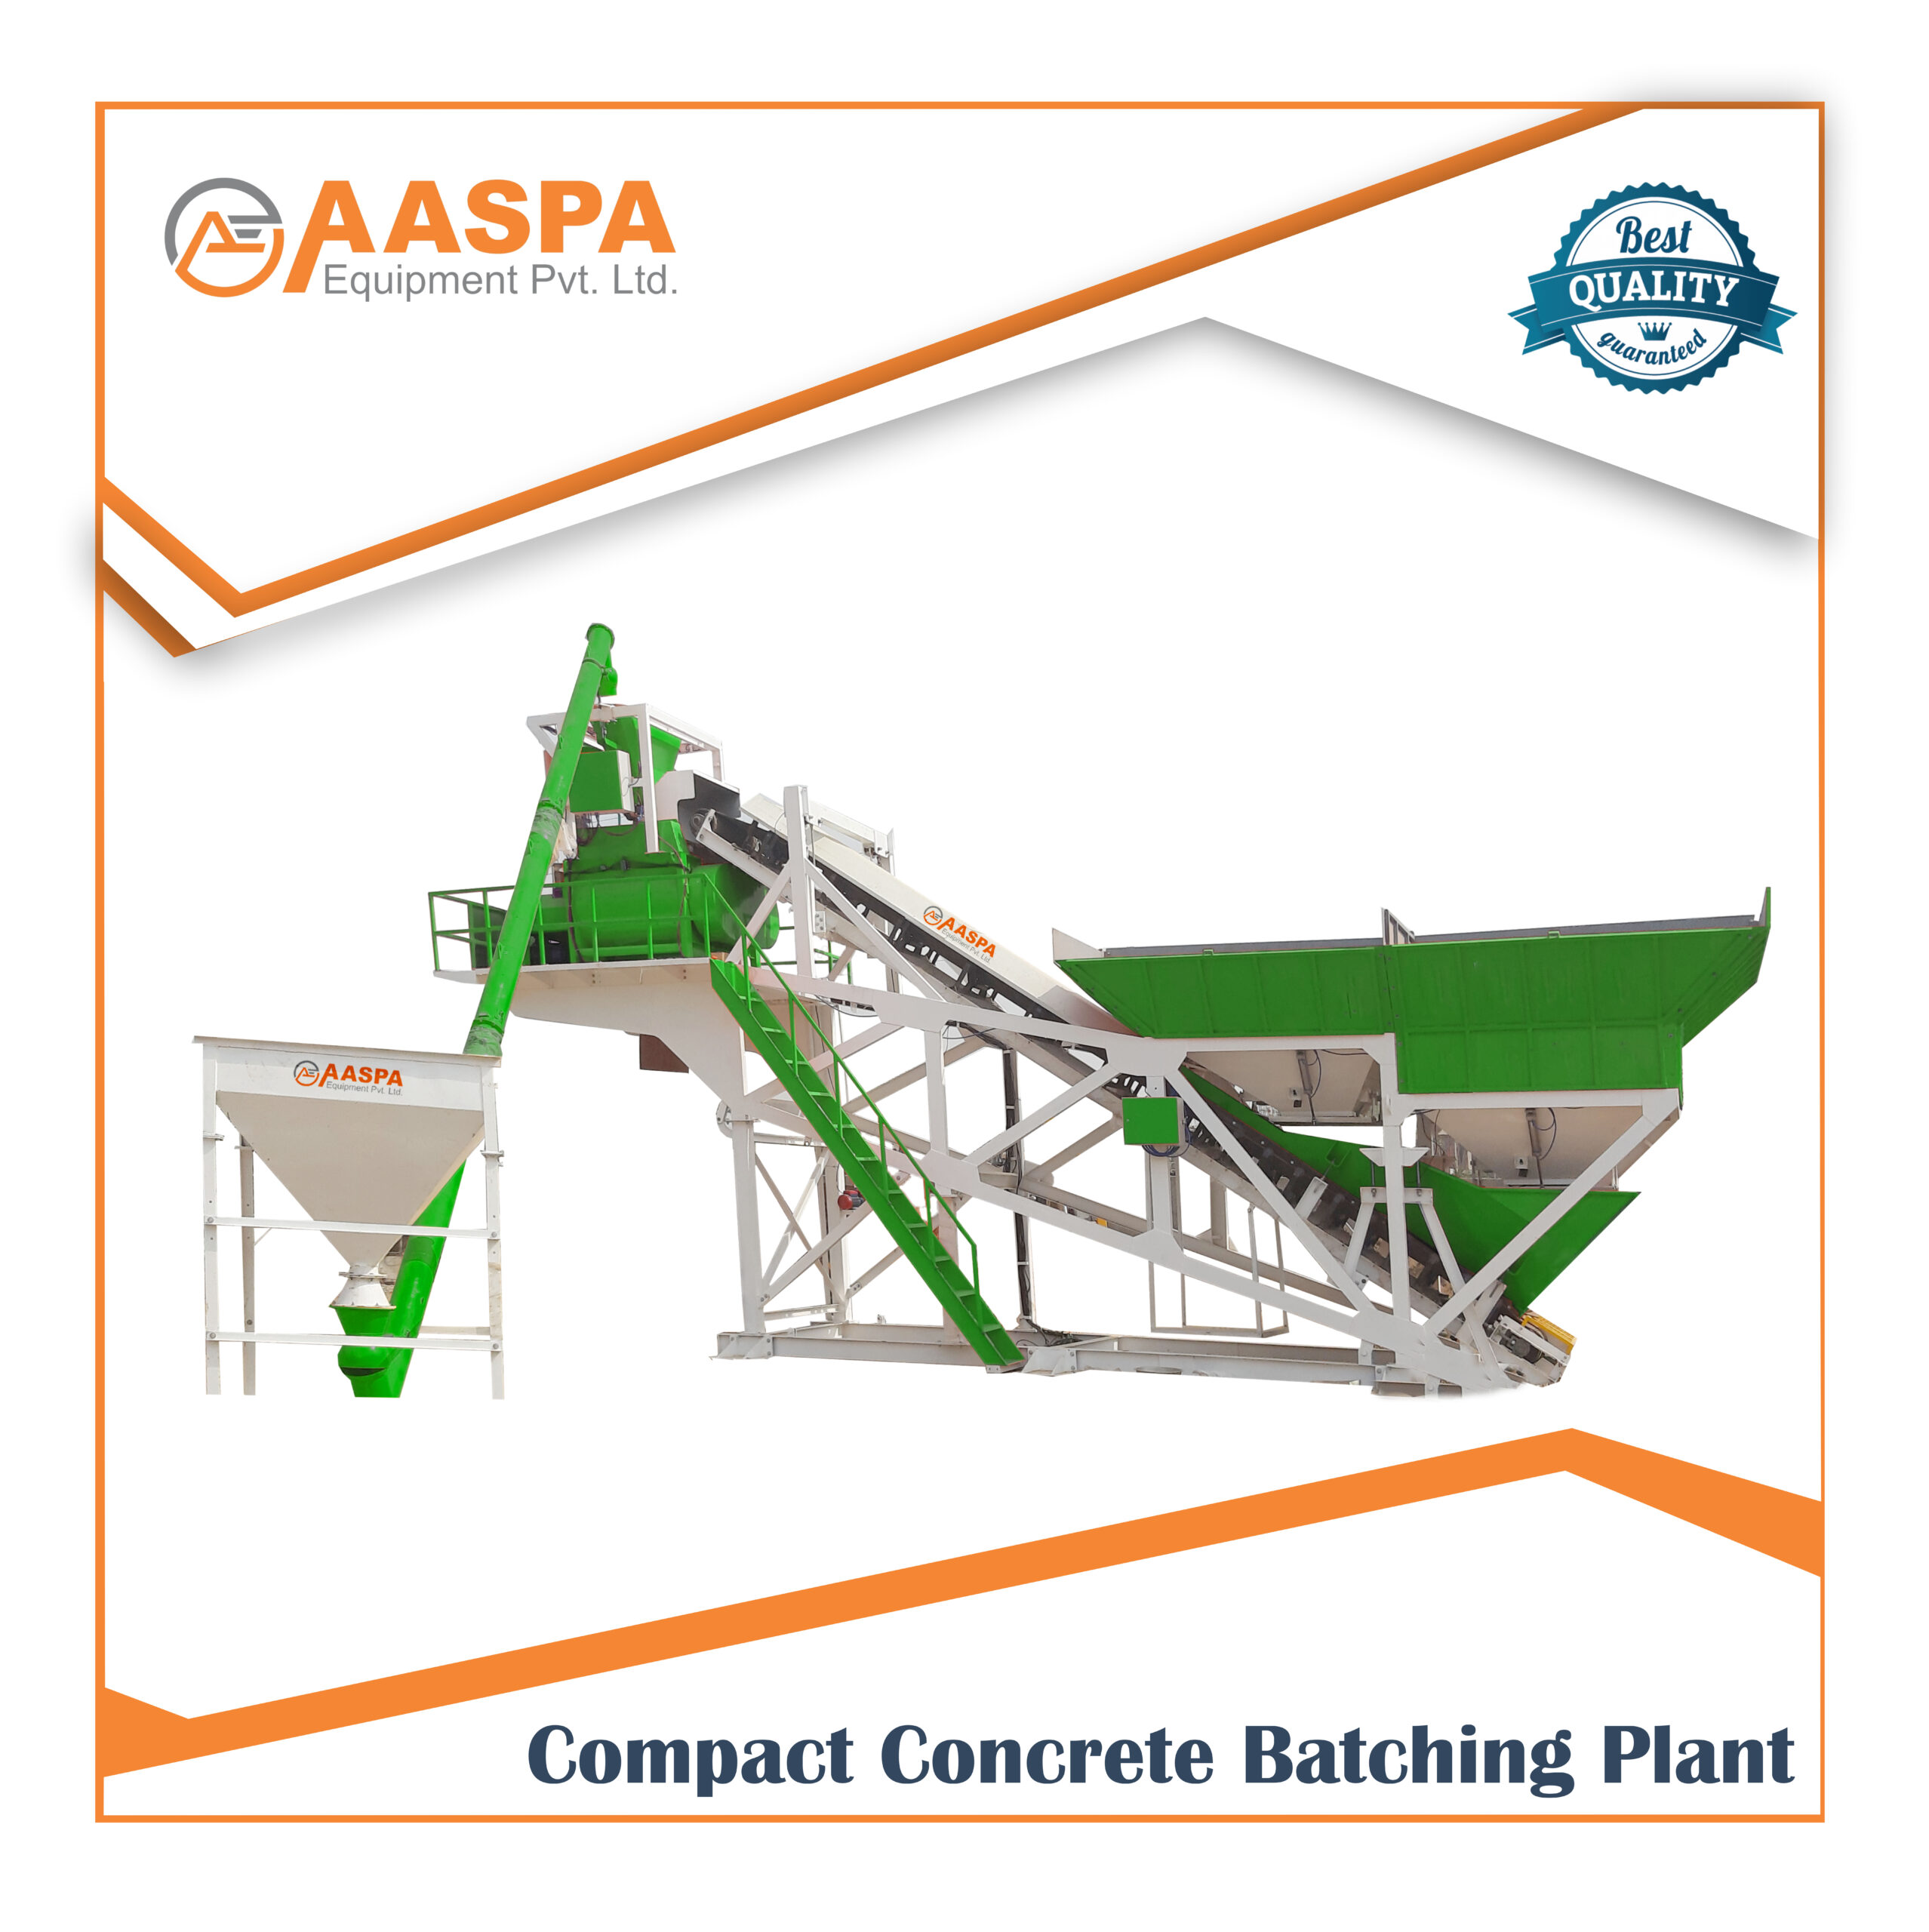 Compact Concrete Batching Plant